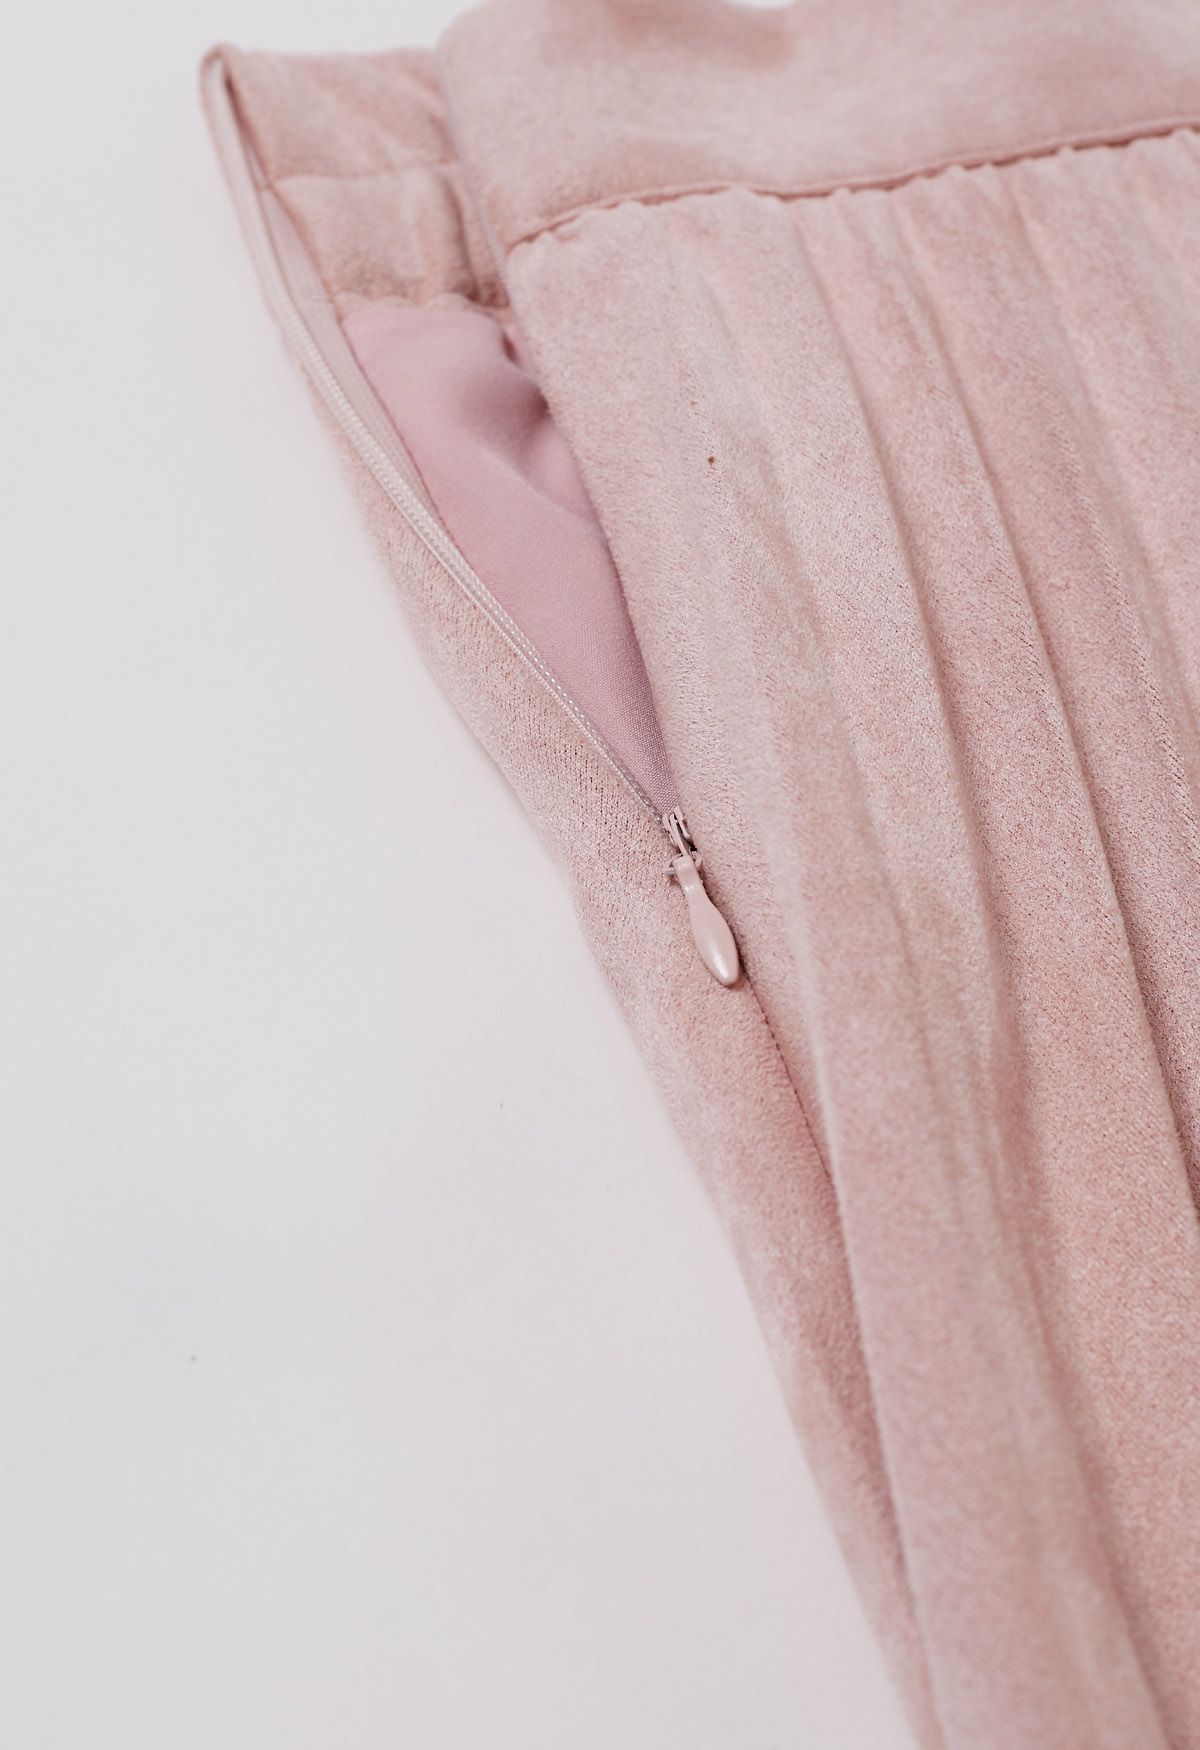 Falda midi plisada de ante sintético liso en rosa